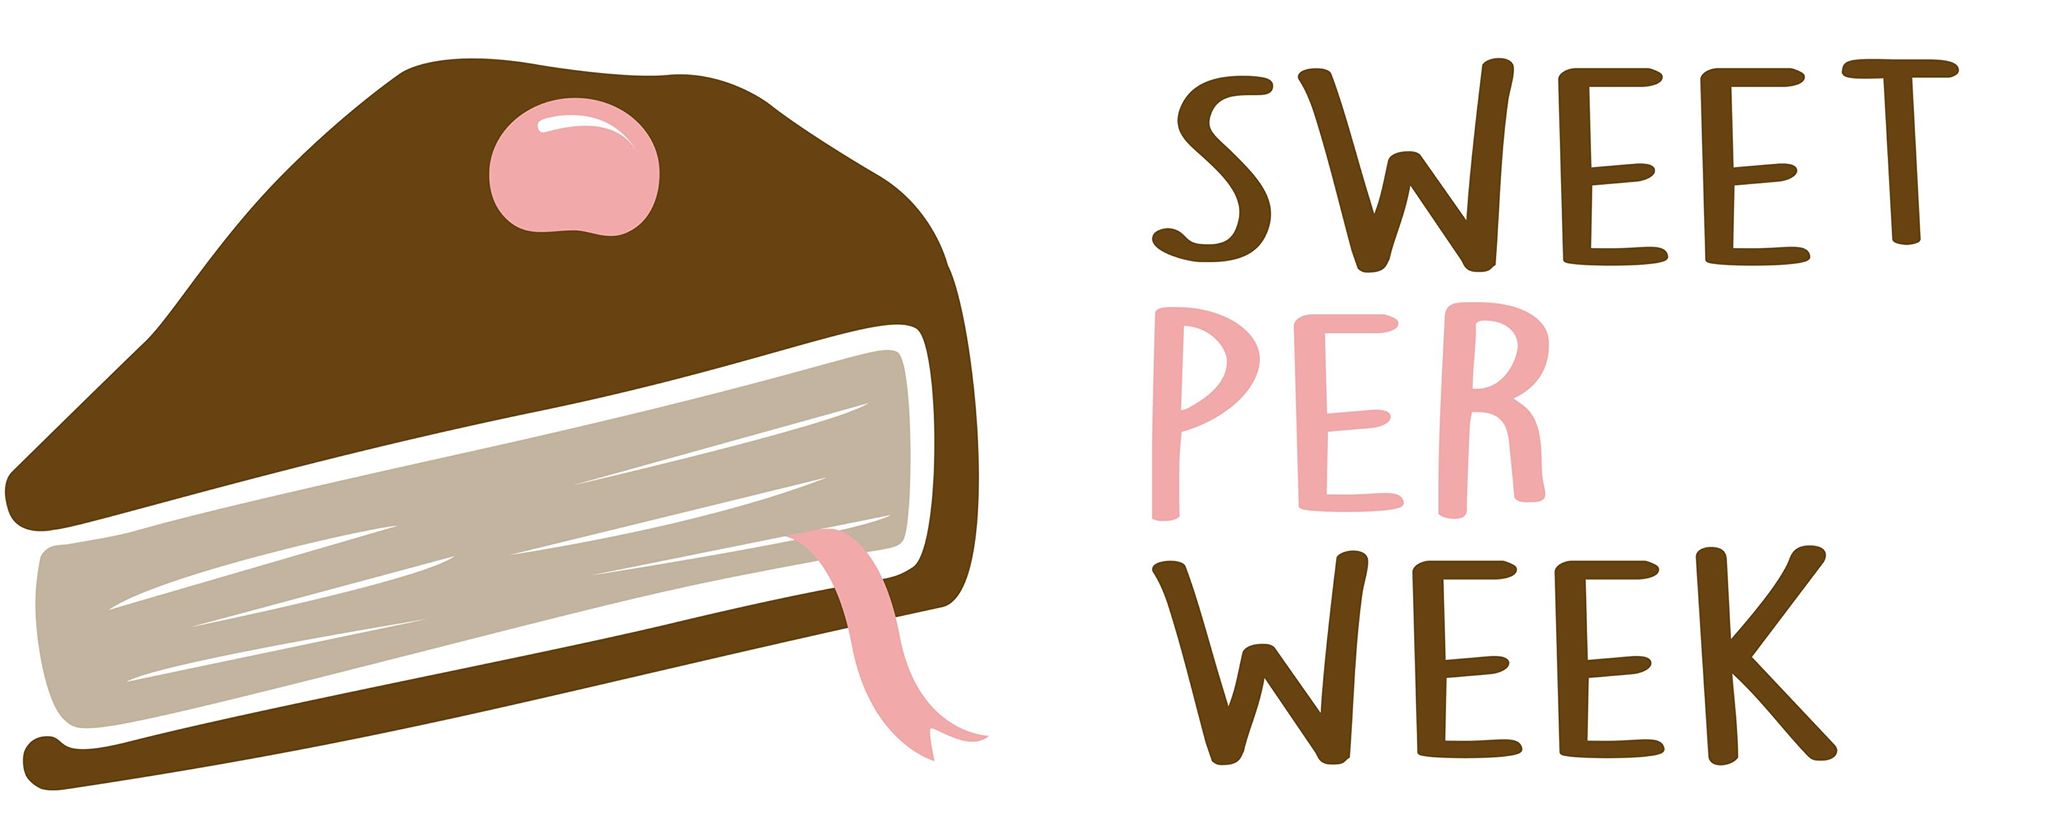 (c) Sweetperweek.wordpress.com